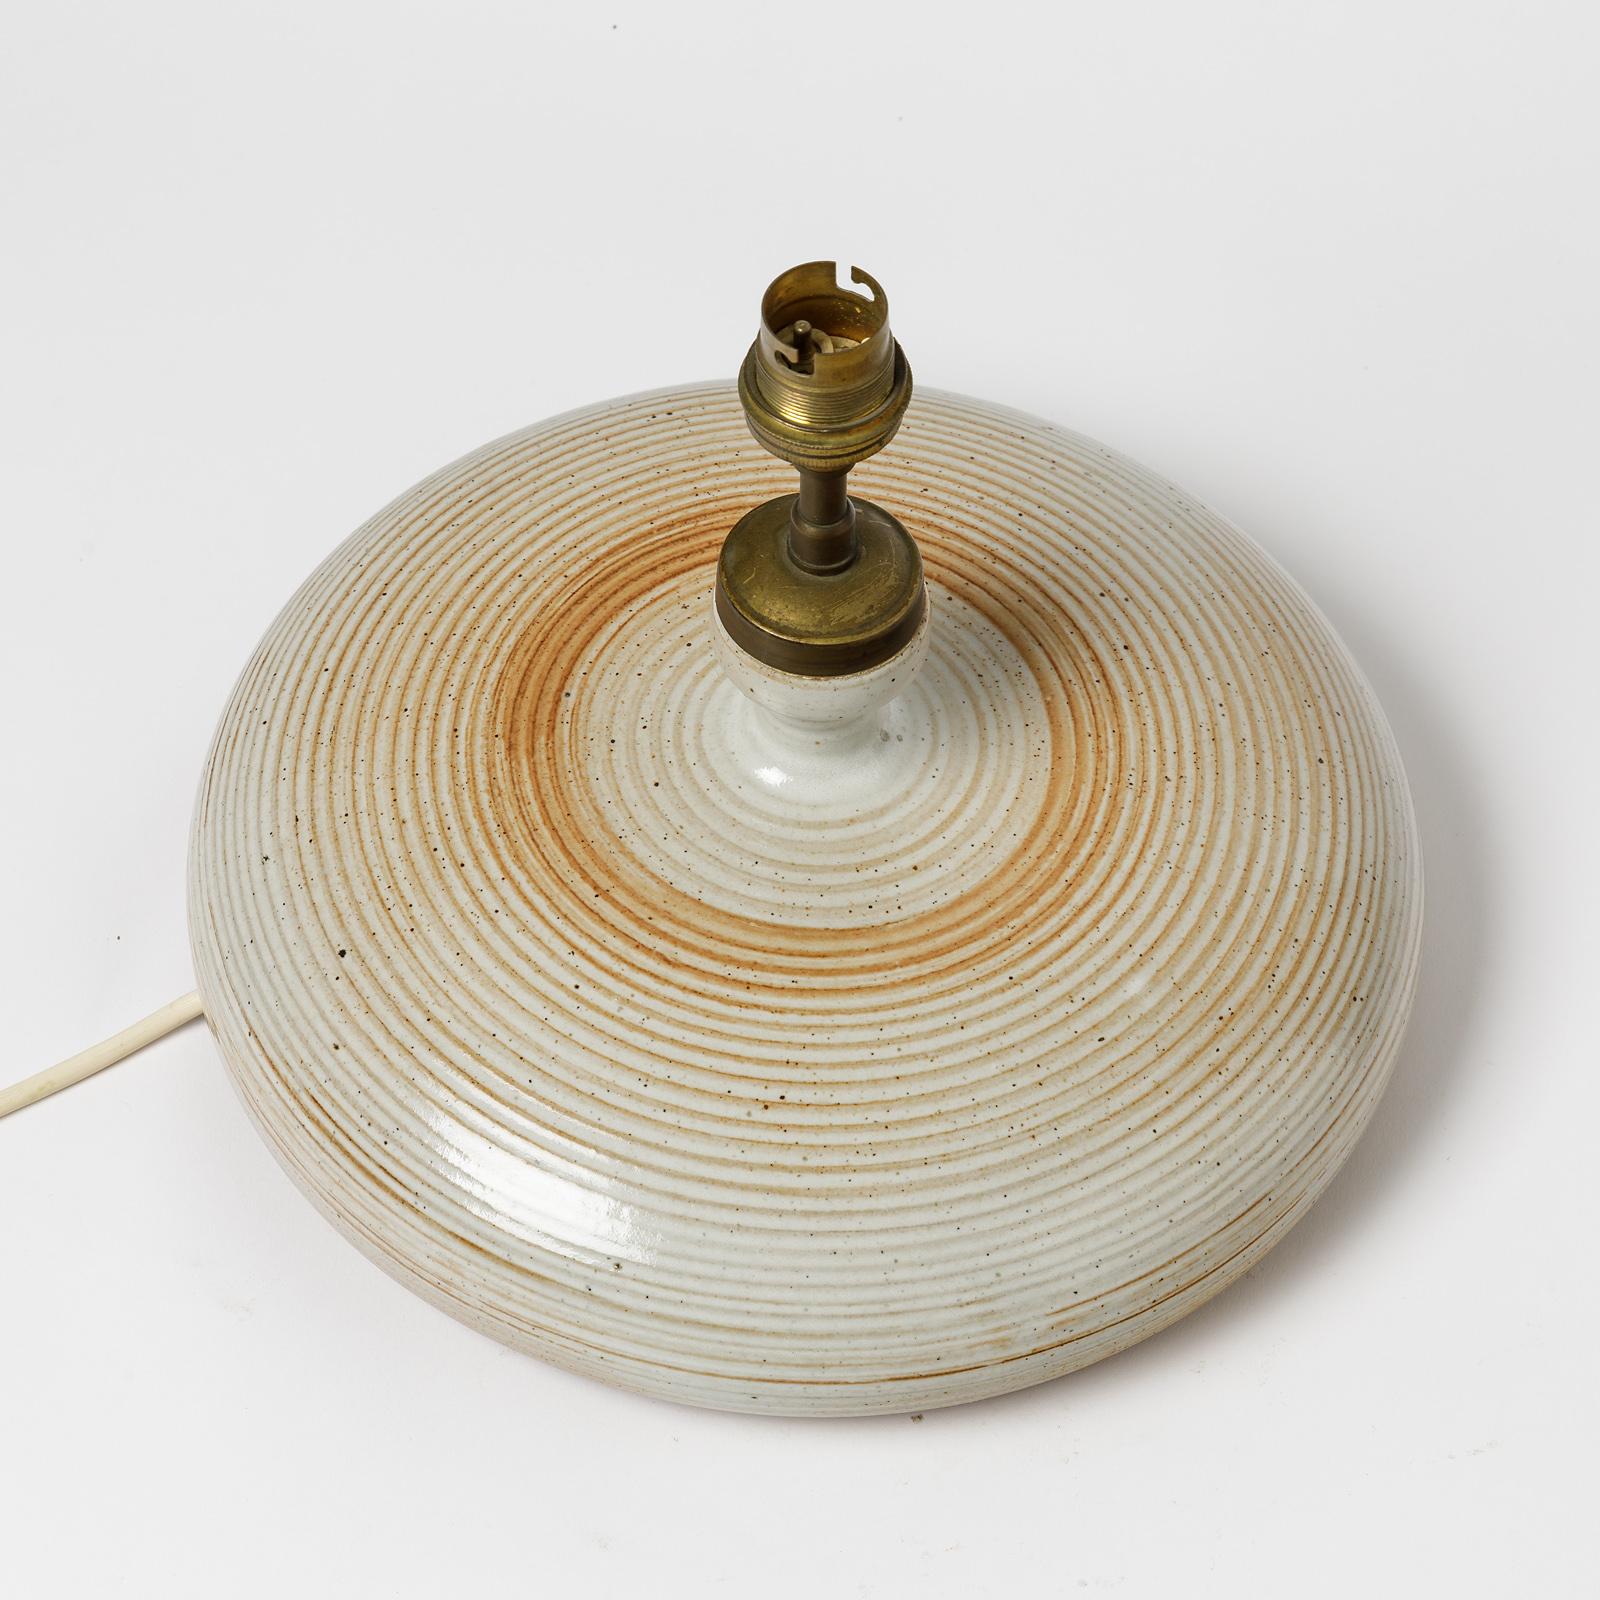 20th Century Ceramic Table Lamp Attributed to La Borne Potters, circa 1960-1970